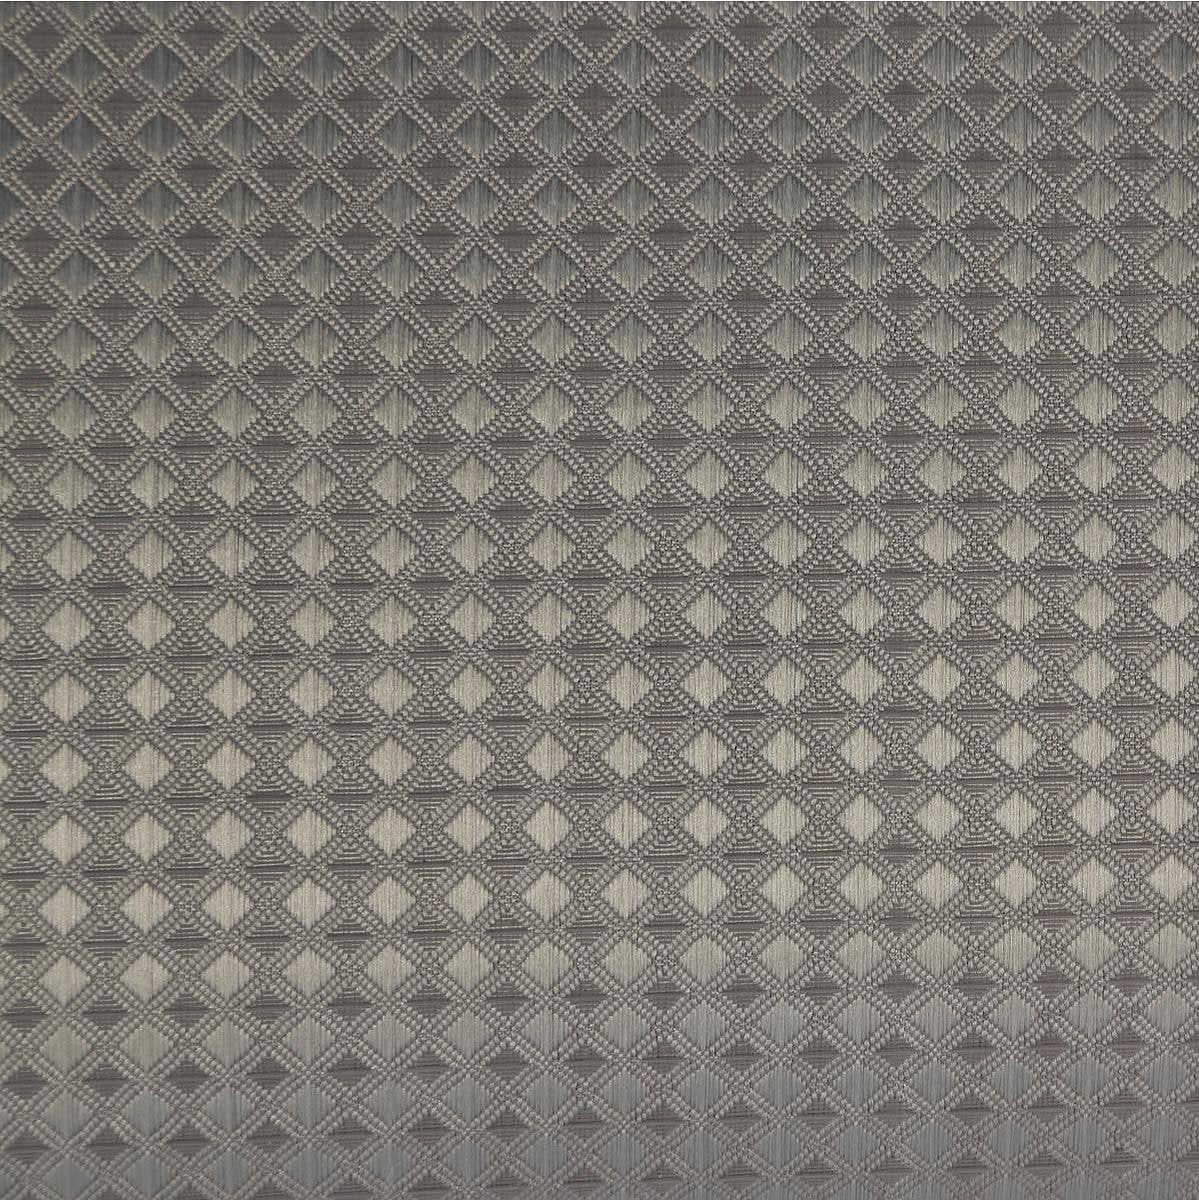 Atmosphera douchegordijn honinggraat effect taupe - 180 x 200 Cm - Met 12 ringen inbegrepen - Polyes